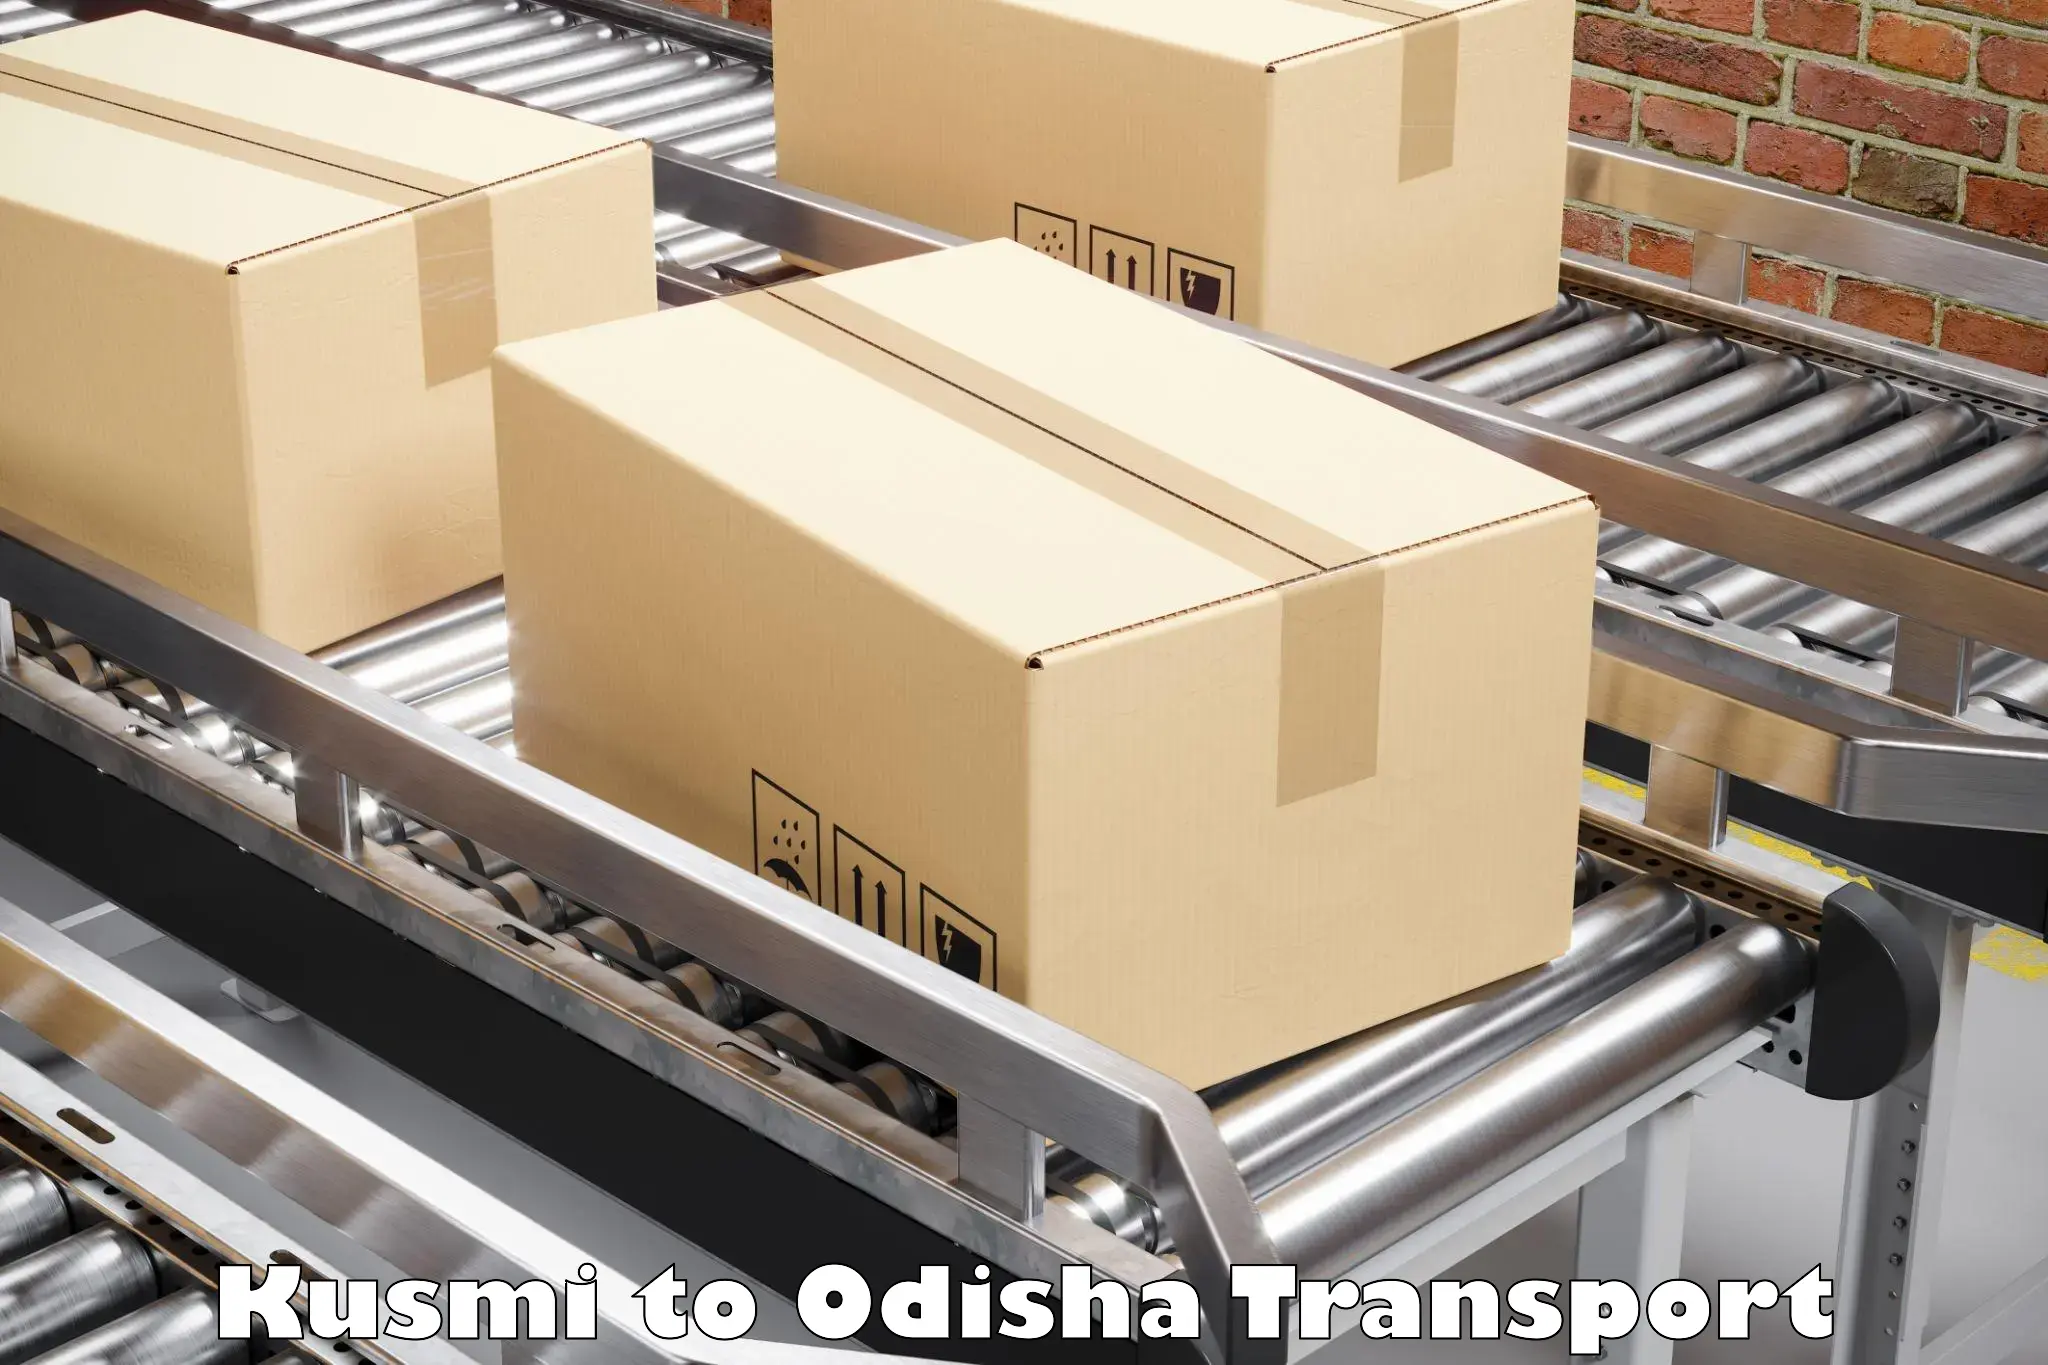 Vehicle transport services Kusmi to Odisha